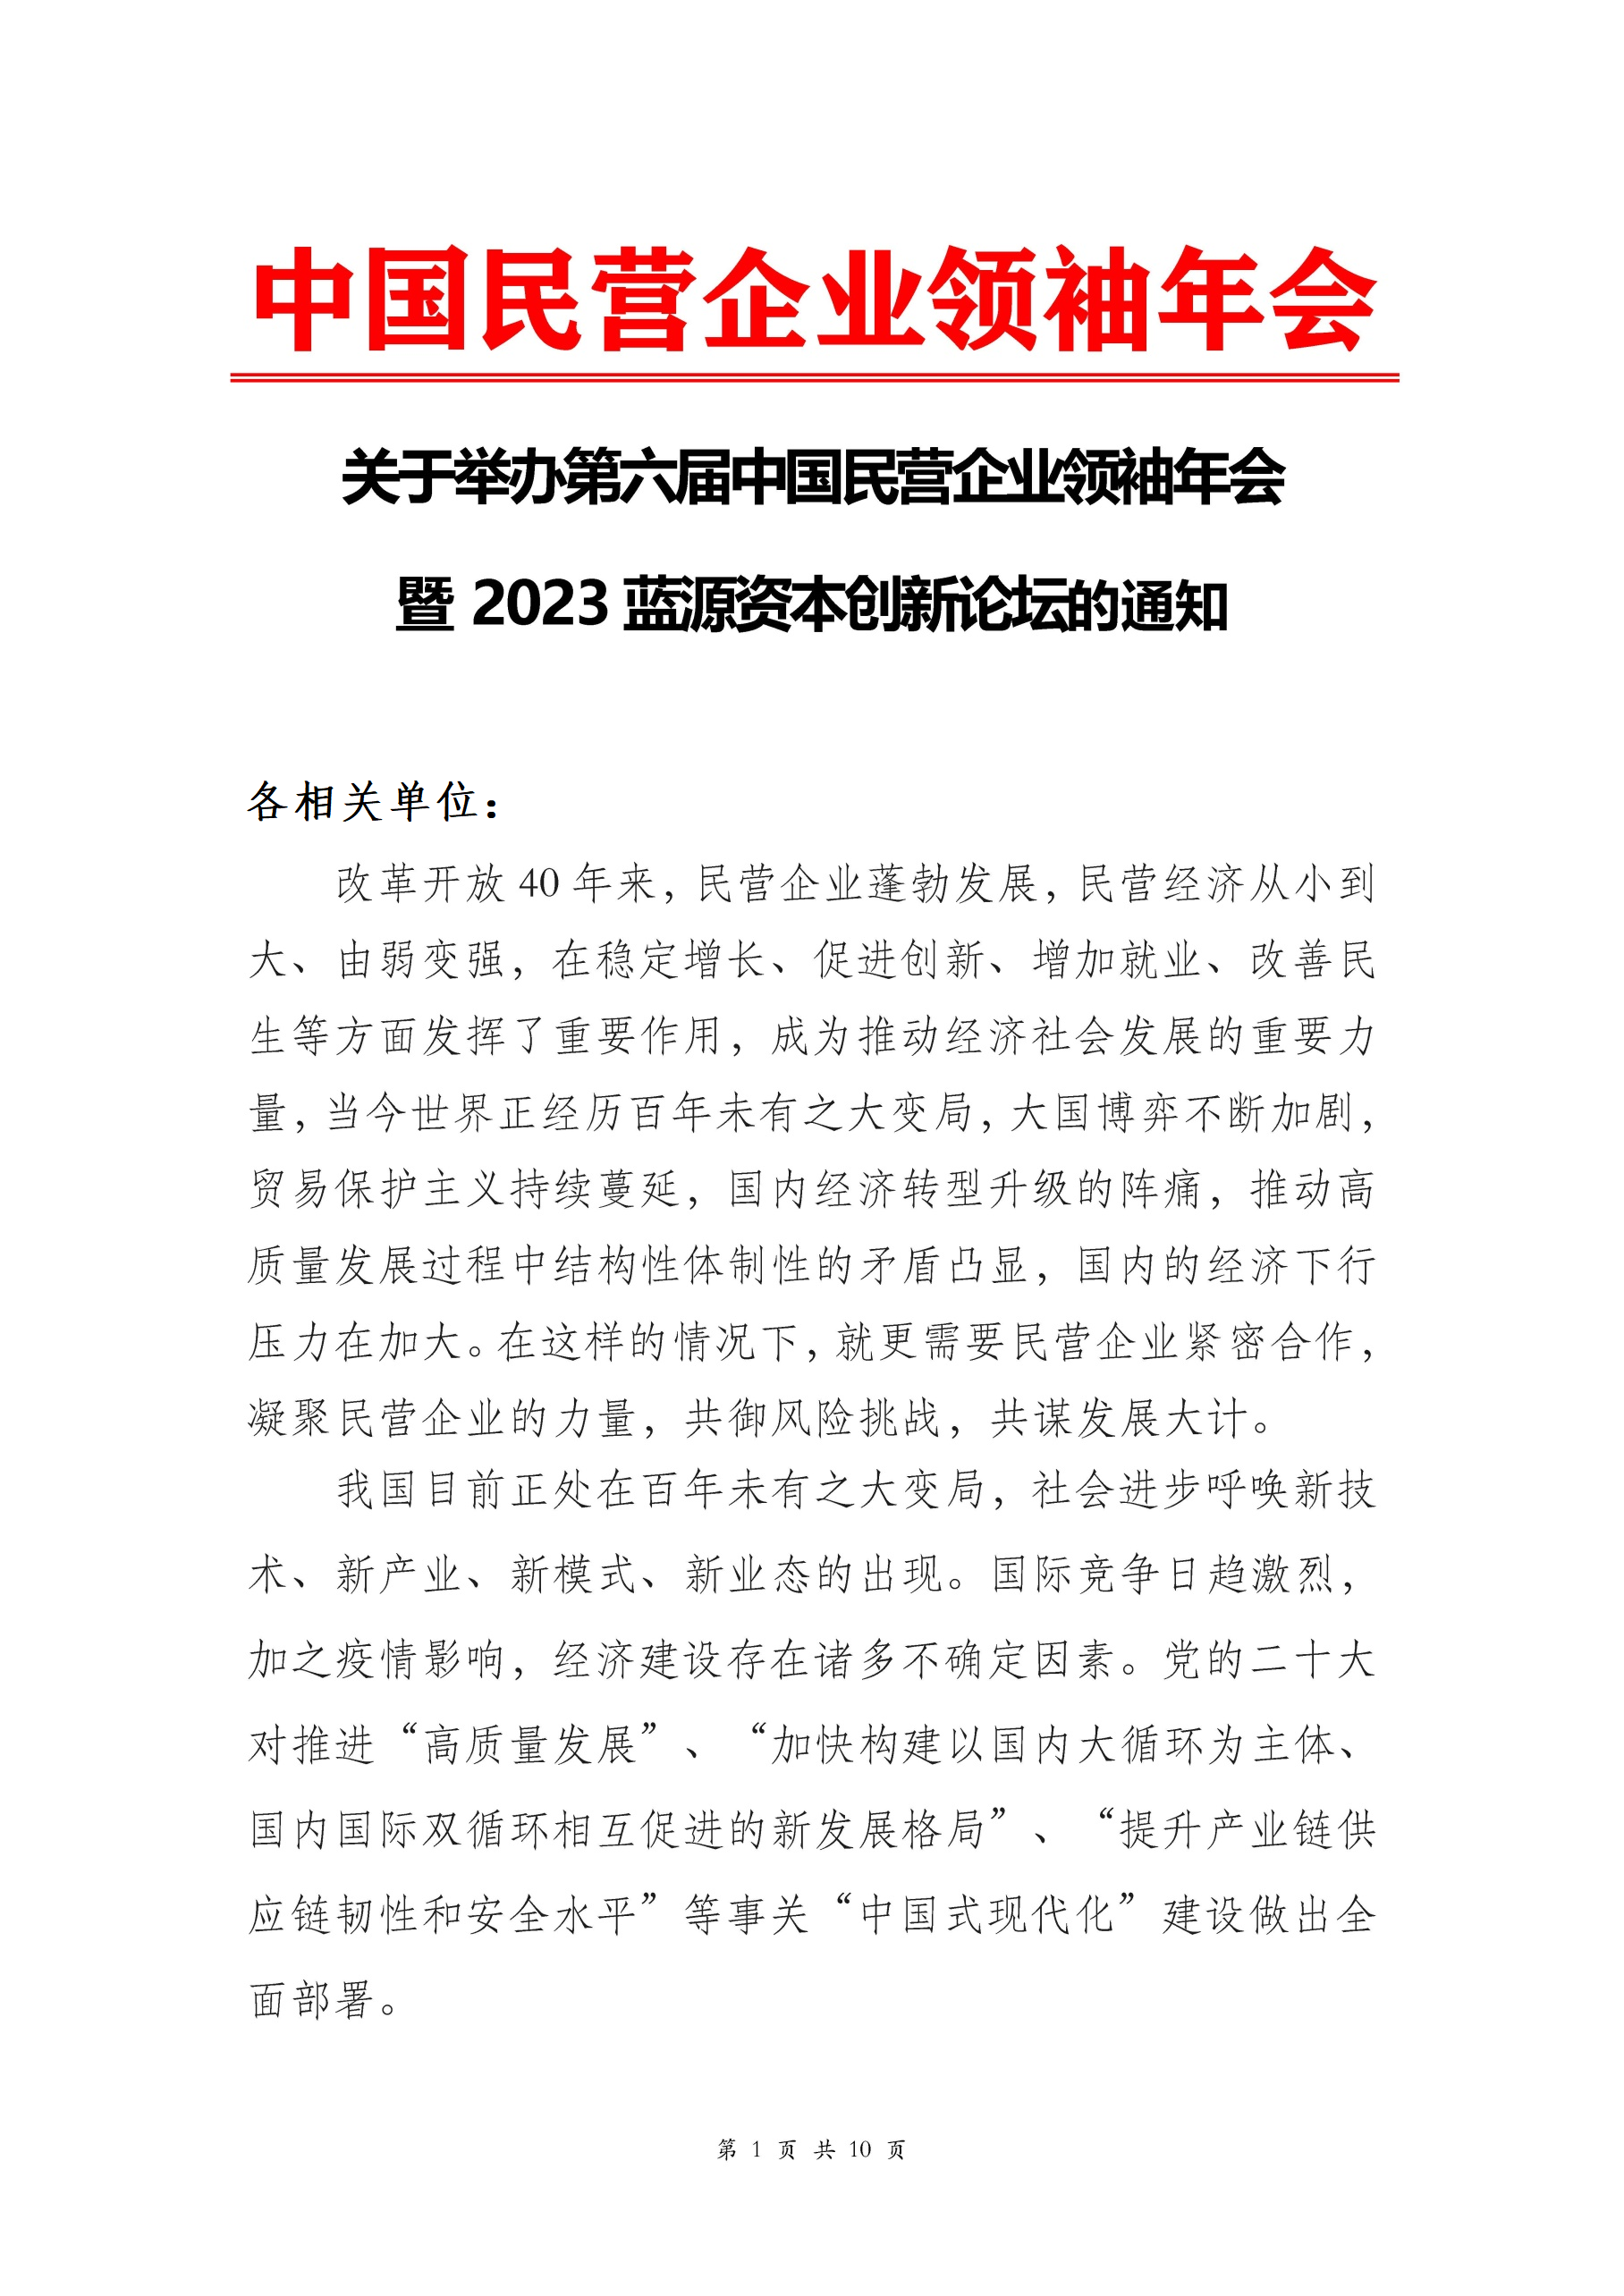 关于举办“第六届中国民营企业领袖年会”的通知